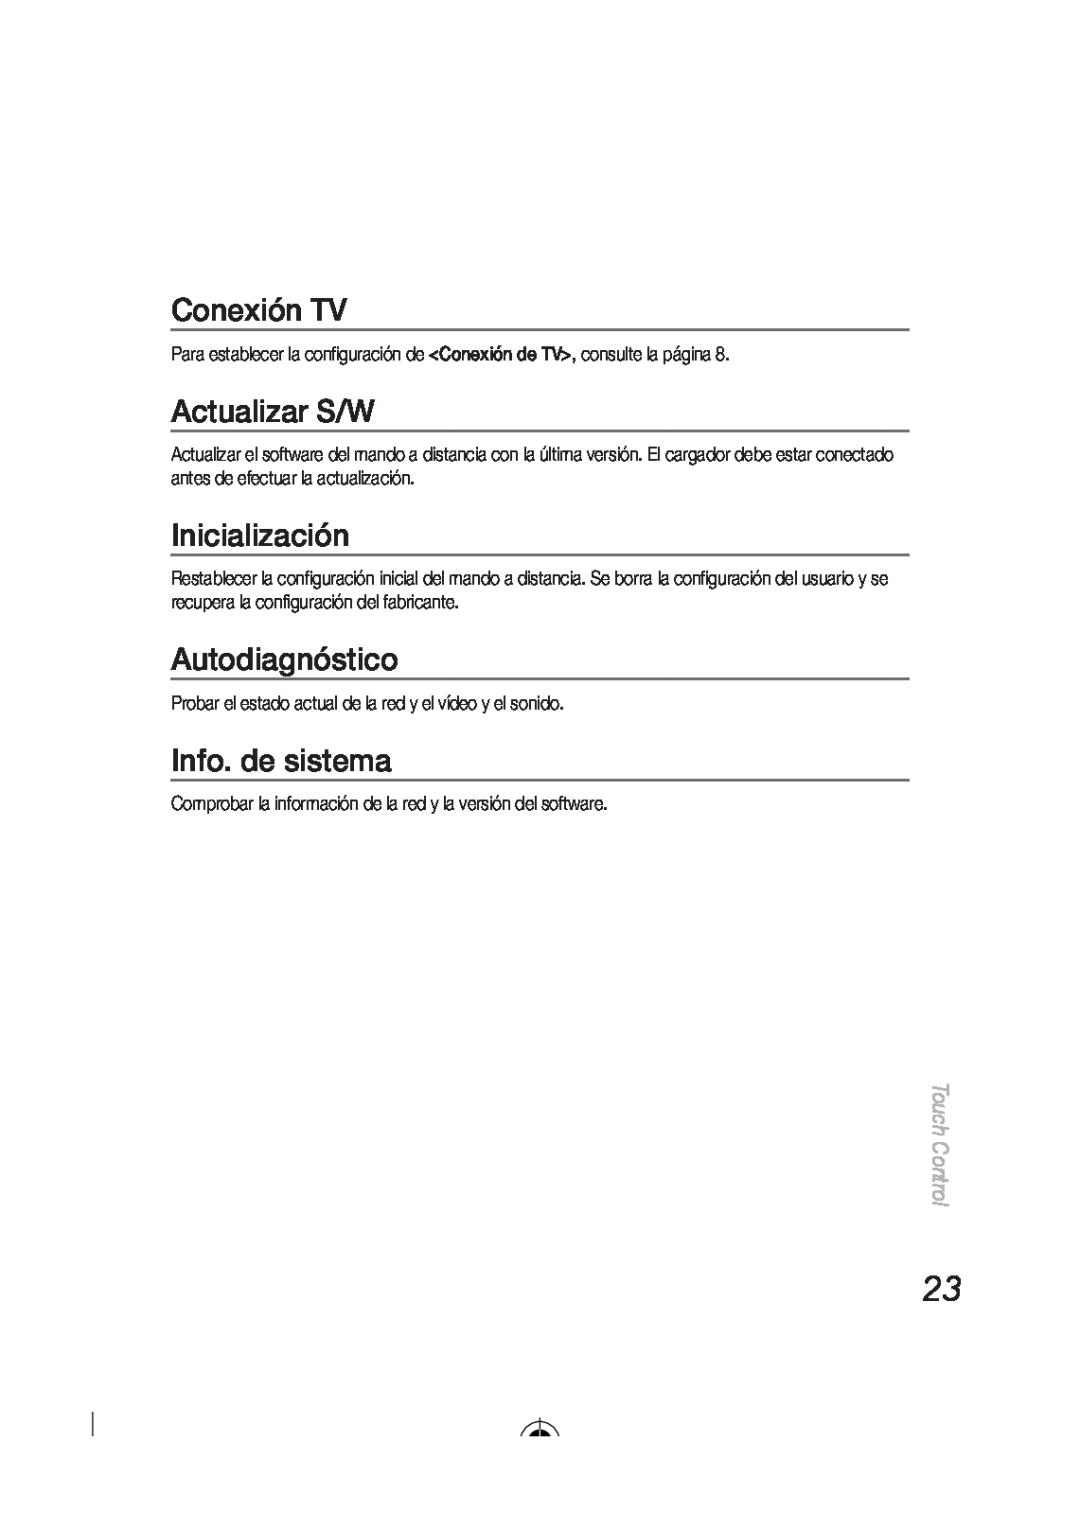 Samsung LED-C9000 user manual Conexión TV, Actualizar S/W, Inicialización, Autodiagnóstico, Info. de sistema, Touch Control 